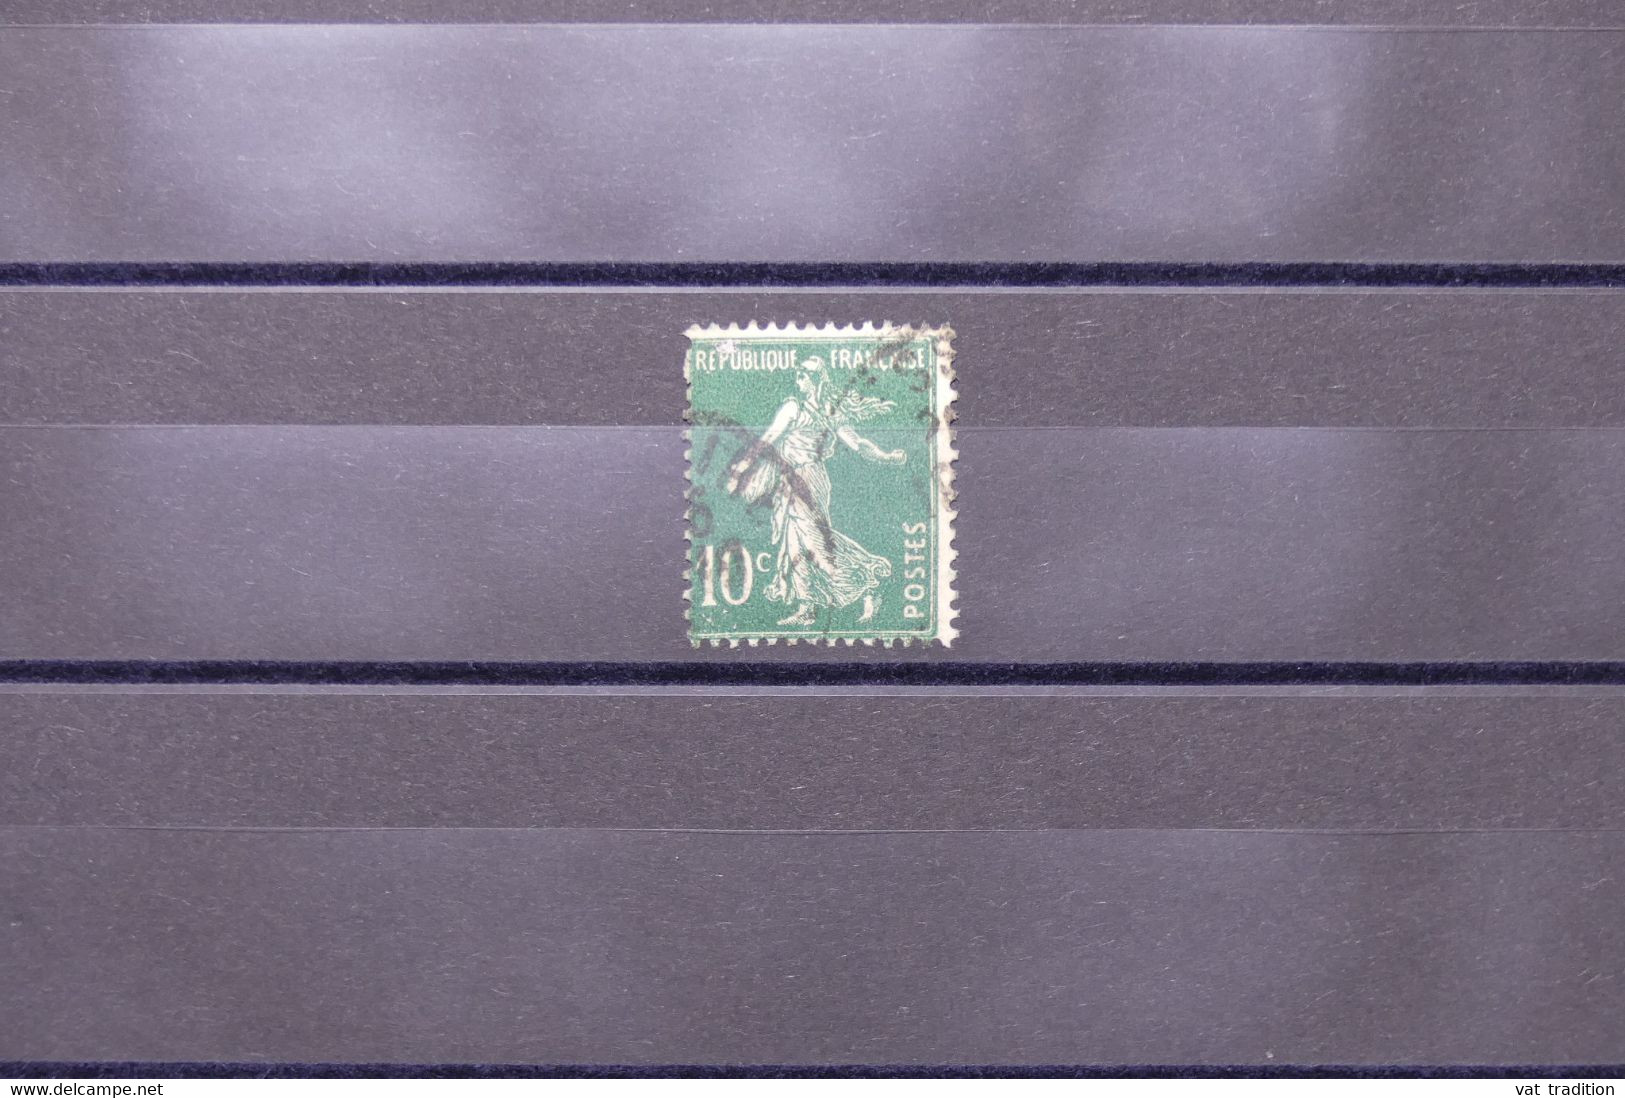 FRANCE - Variété - N°Yvert 159 - Semeuse - Lettre E De Postes En Trident - Oblitéré  - L 73977 - Usados